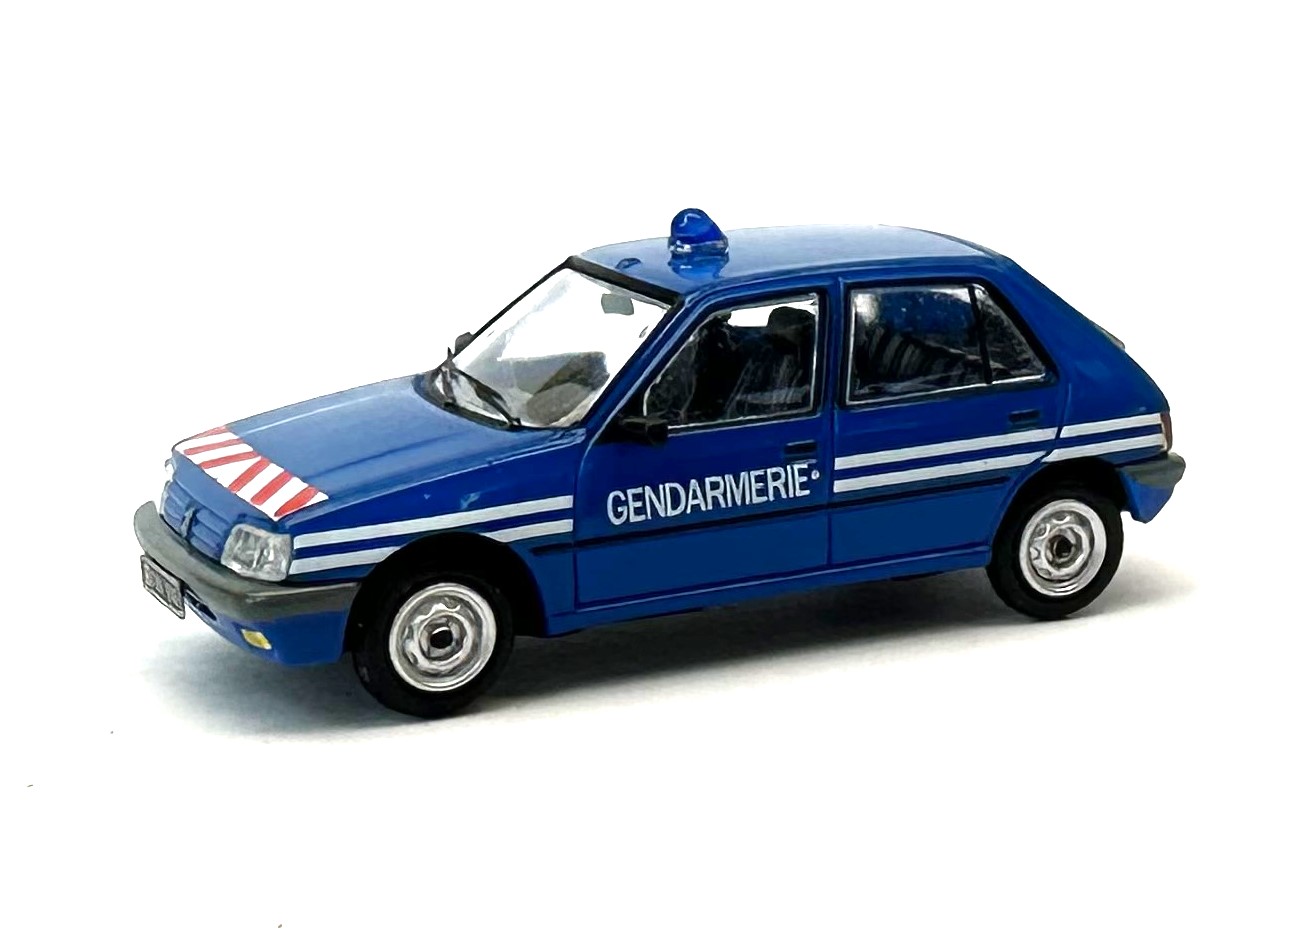 1:87 Peugeot 205 Gendarmerie weiße Streifen